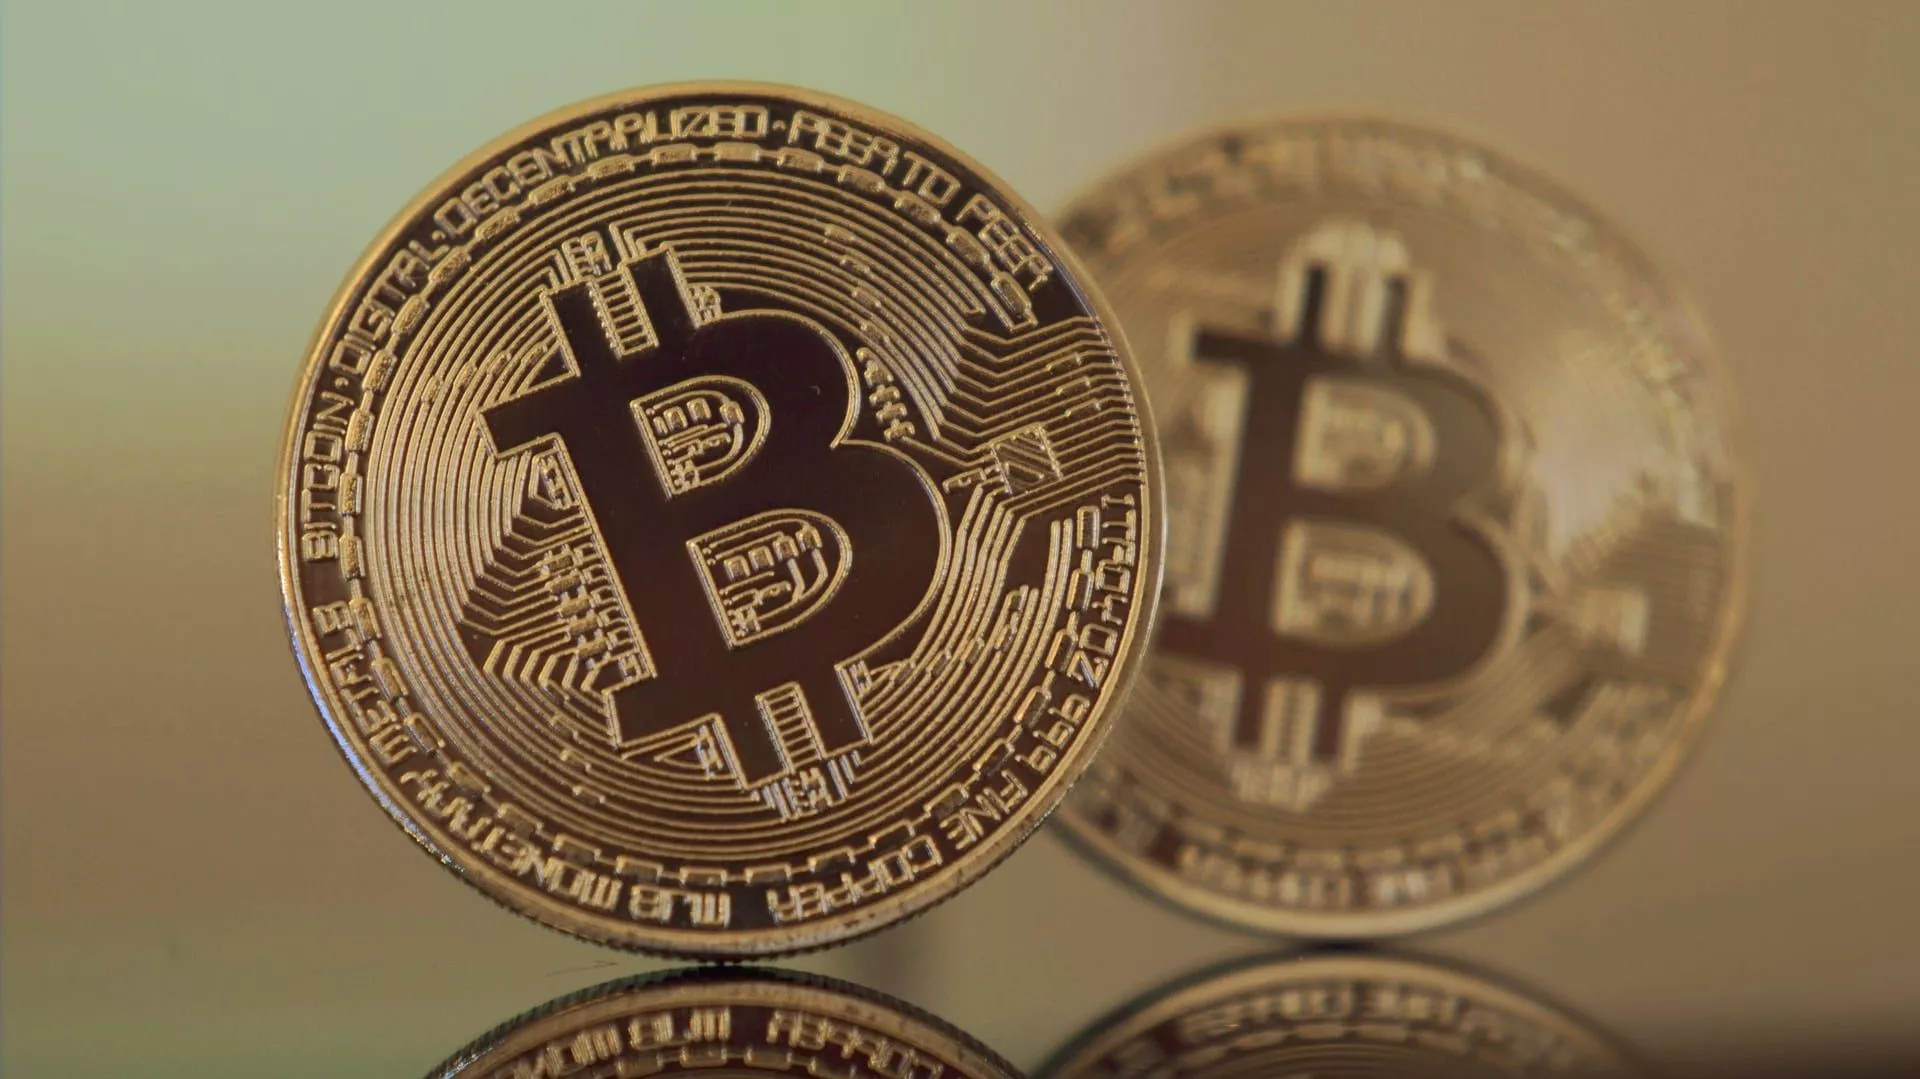 Bitcoin prijs onder $10k, maar trend blijft bullish